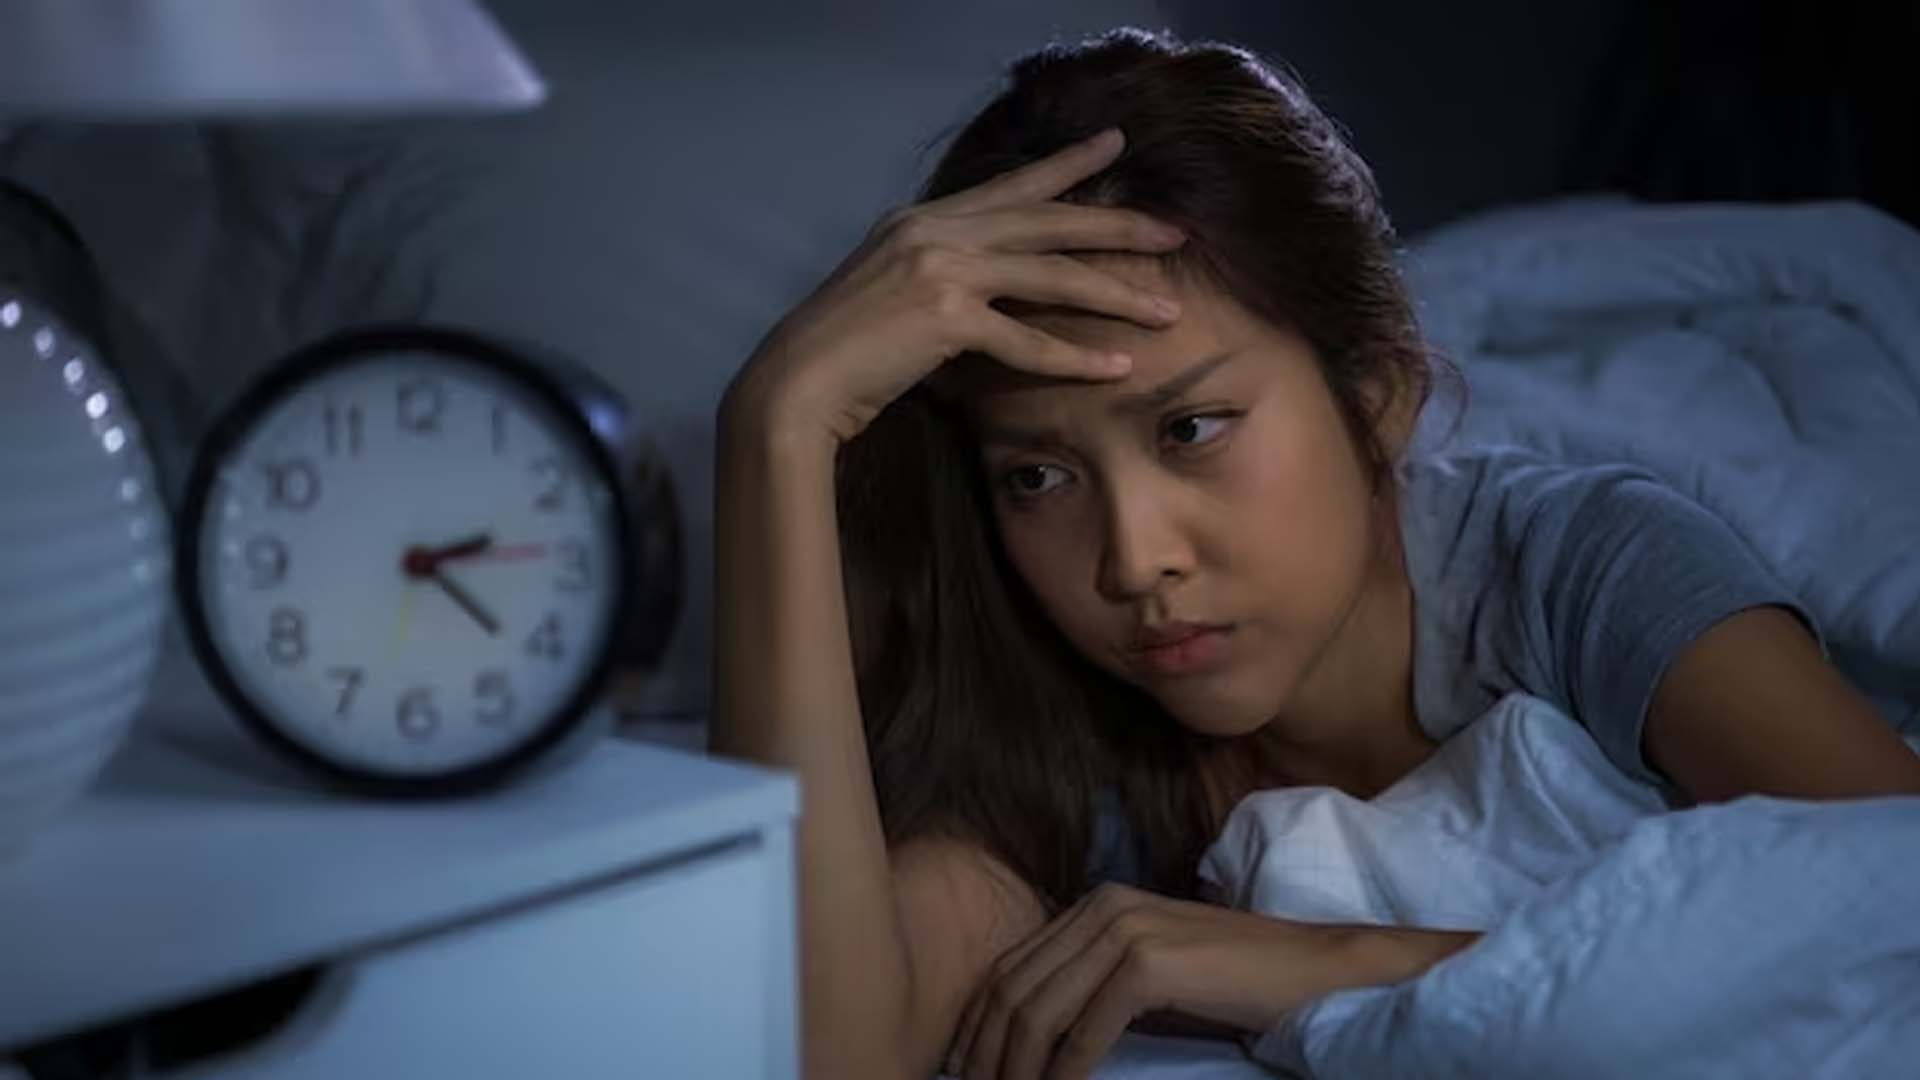 Women Suffering from Insomnia